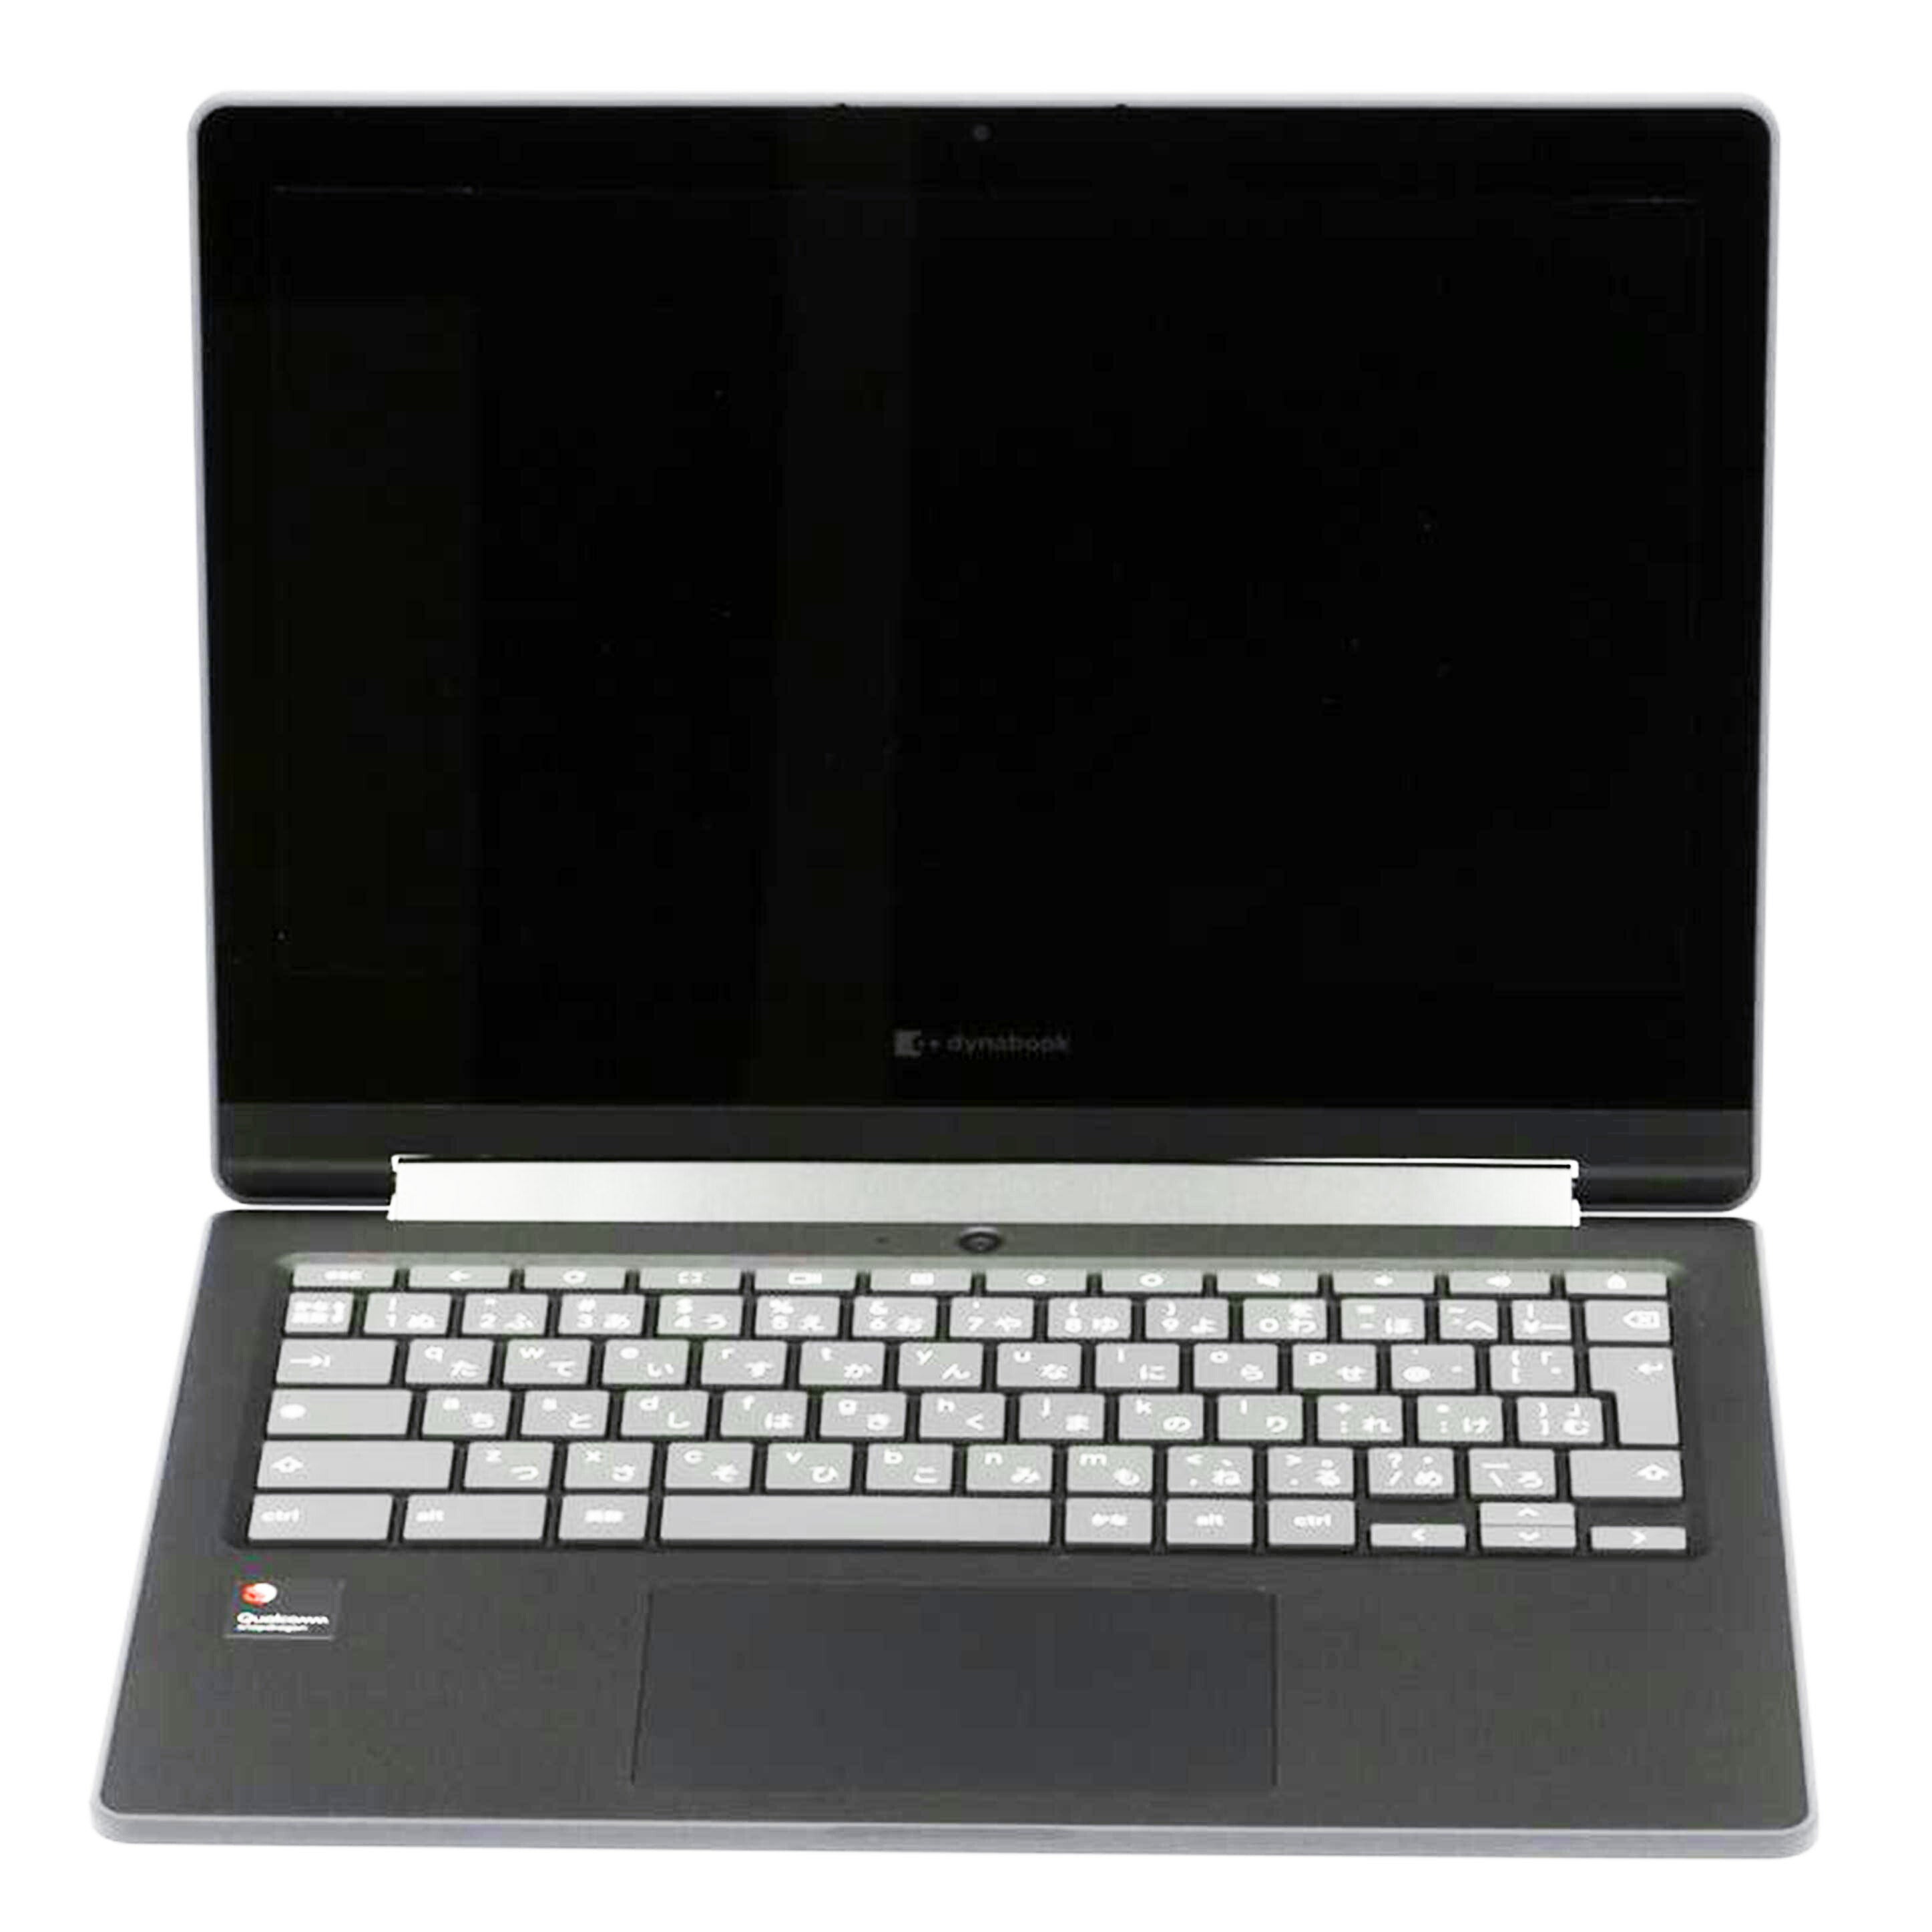 <br>SHARP dynabook シャープ ダイナブック/Chromebook C1 4GLTEモデル/SH-W03/72709213E/パソコン/Aランク/75